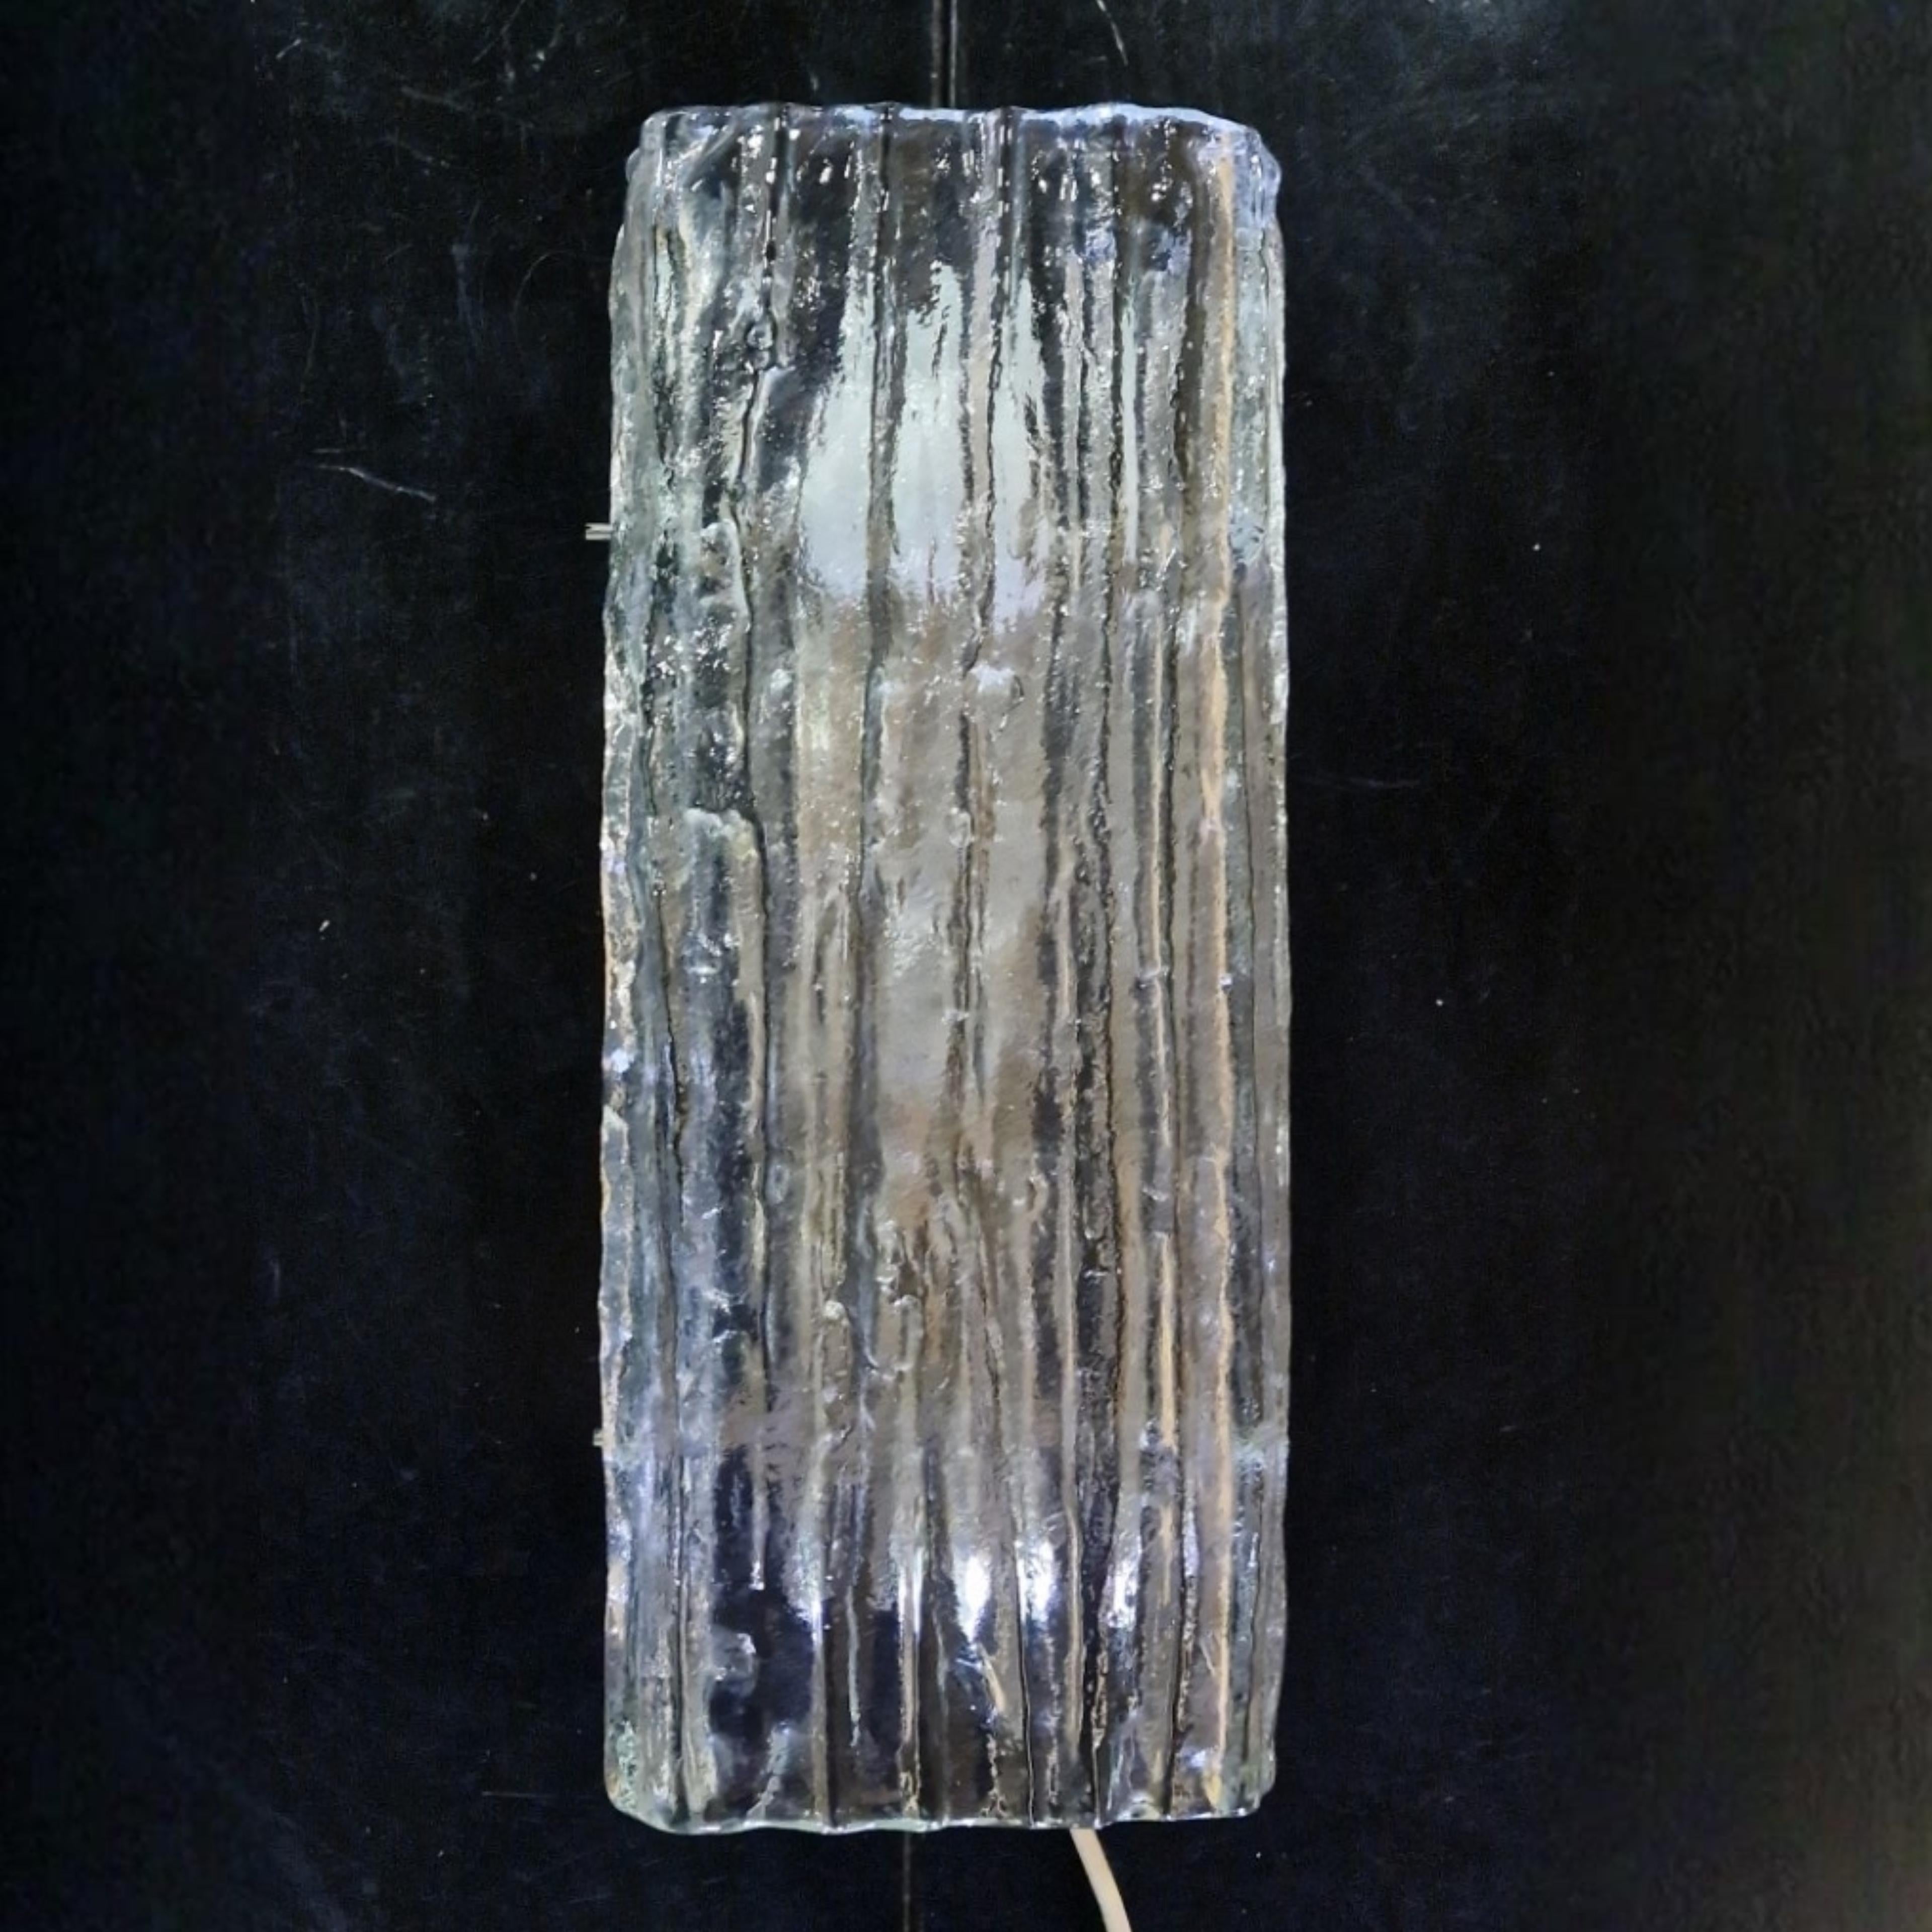 Austrian Ice glass 